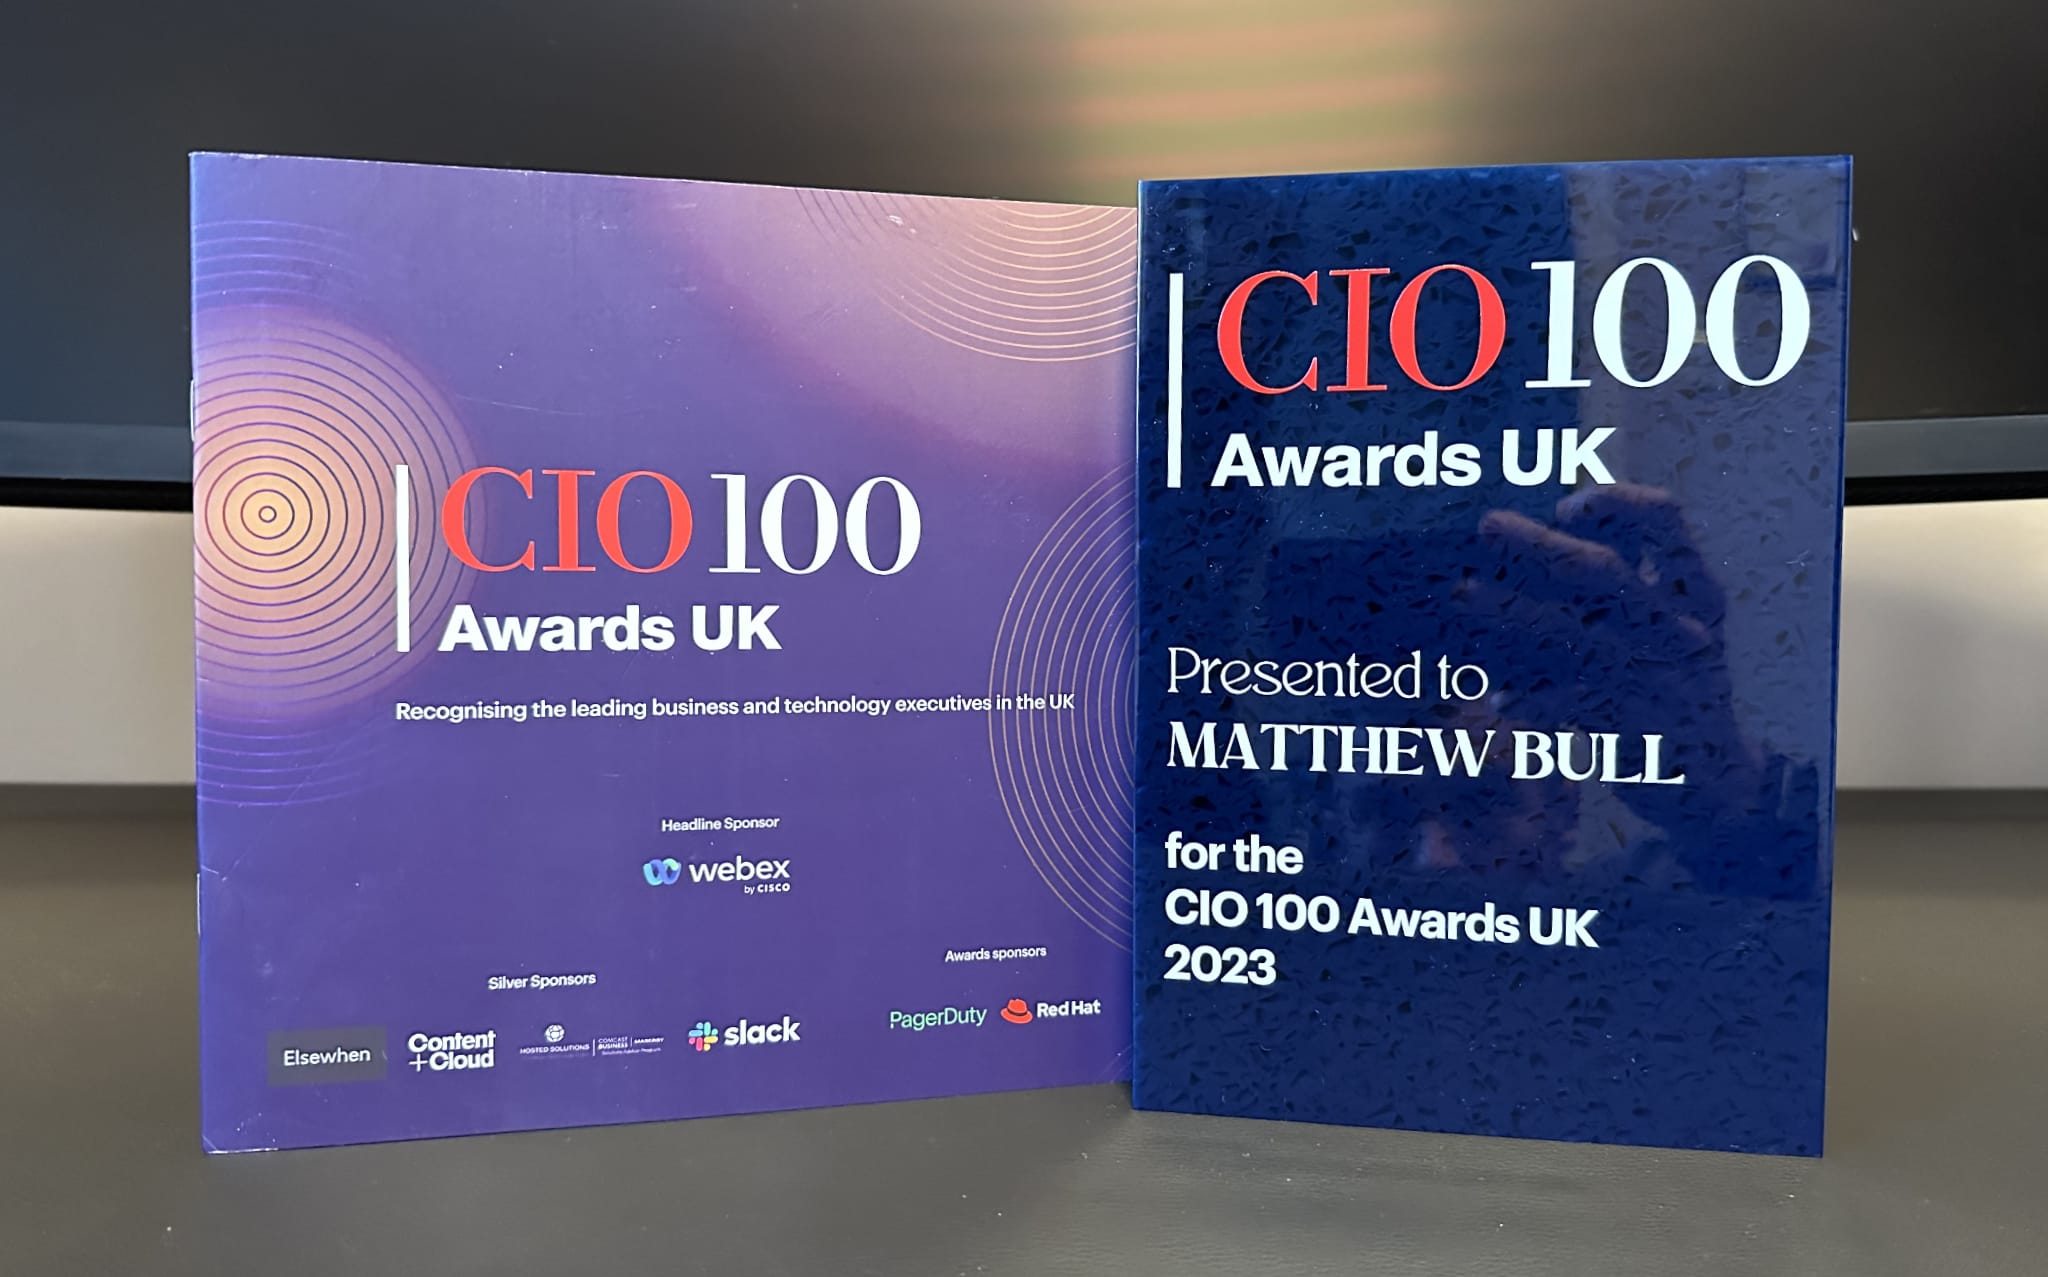 CIO 100 Awards UK 2023